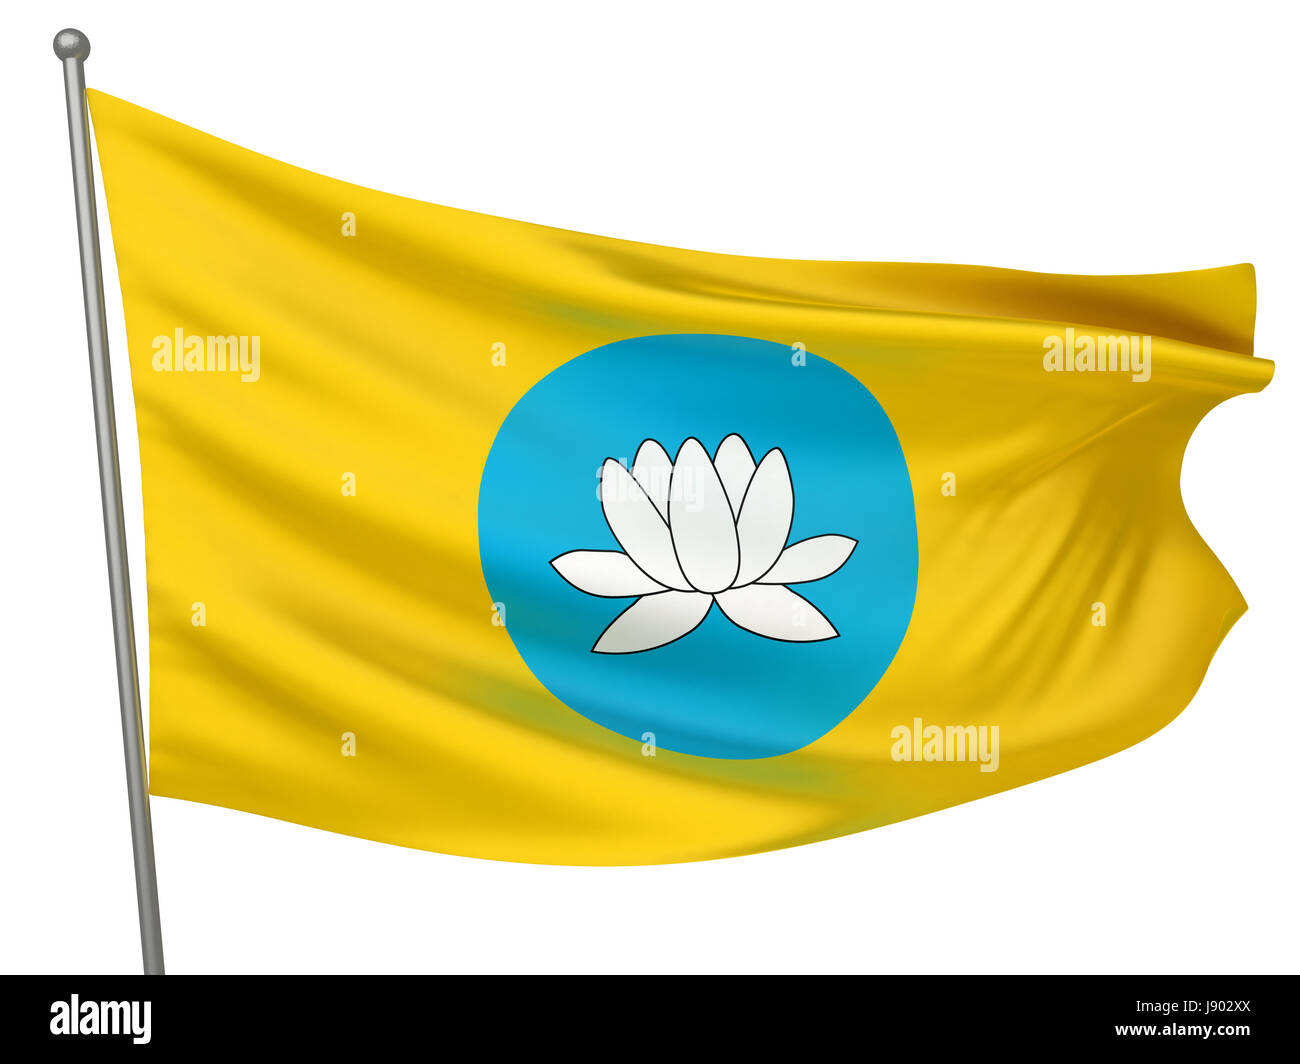 isolated, symbolic, colour, emblem, illustration, flag, banner, national, Stock Photo